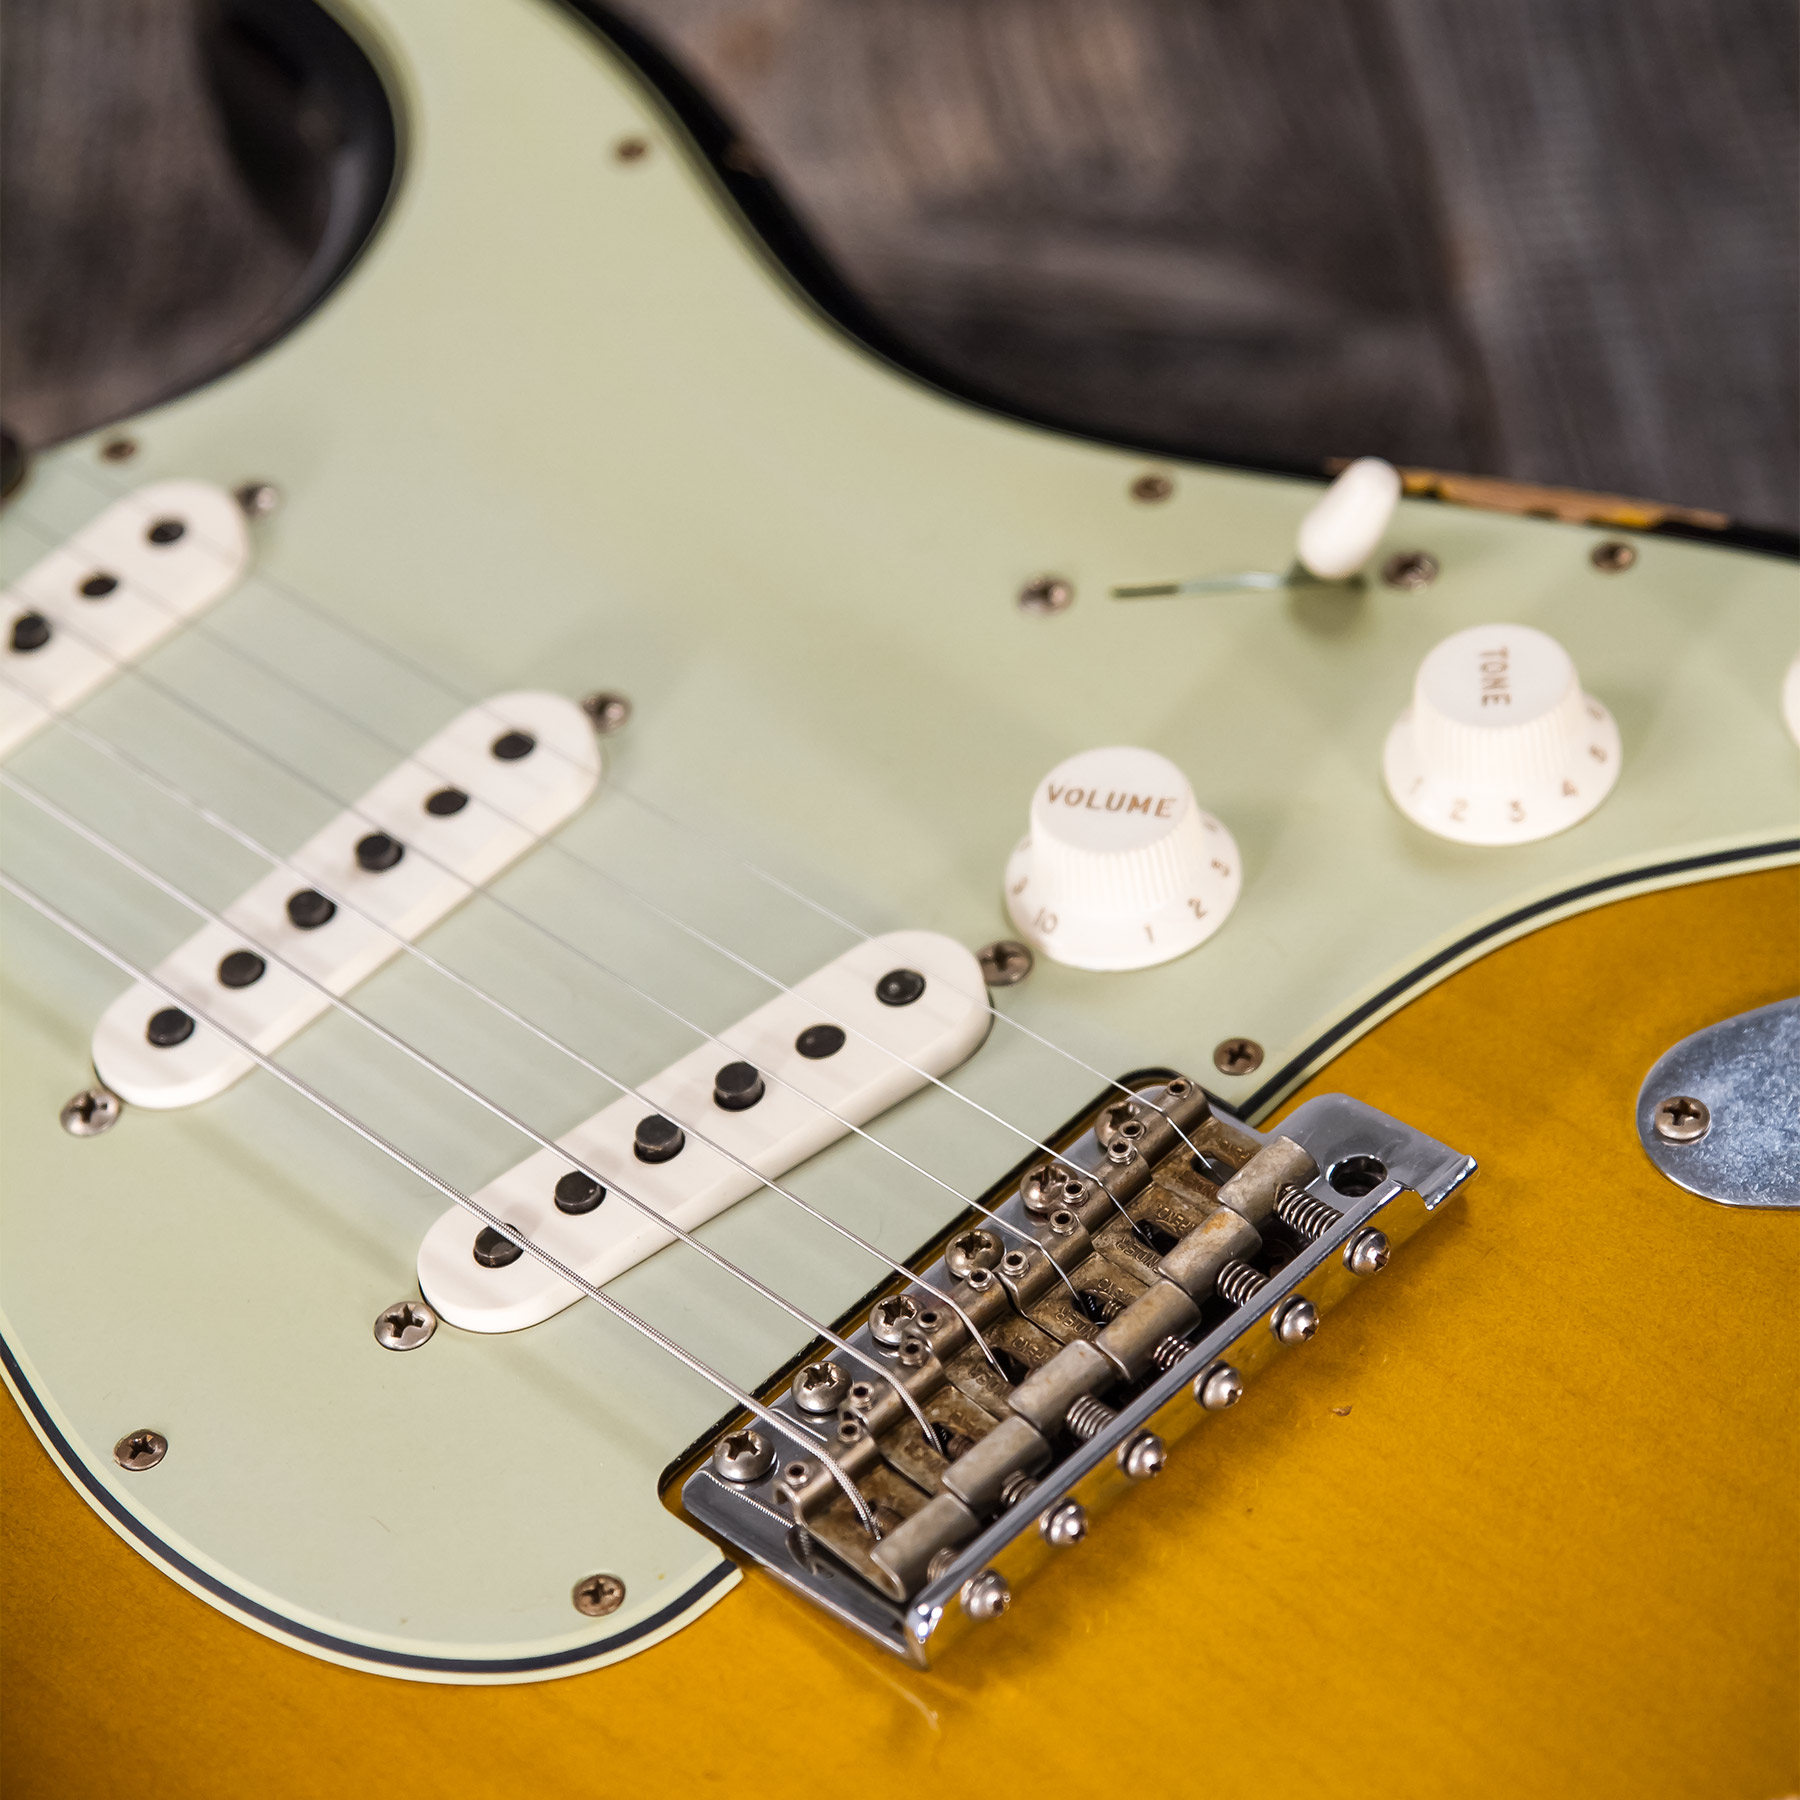 Fender Custom Shop Strat 1959 3s Trem Rw #r117661 - Relic 2-color Sunburst - E-Gitarre in Str-Form - Variation 6